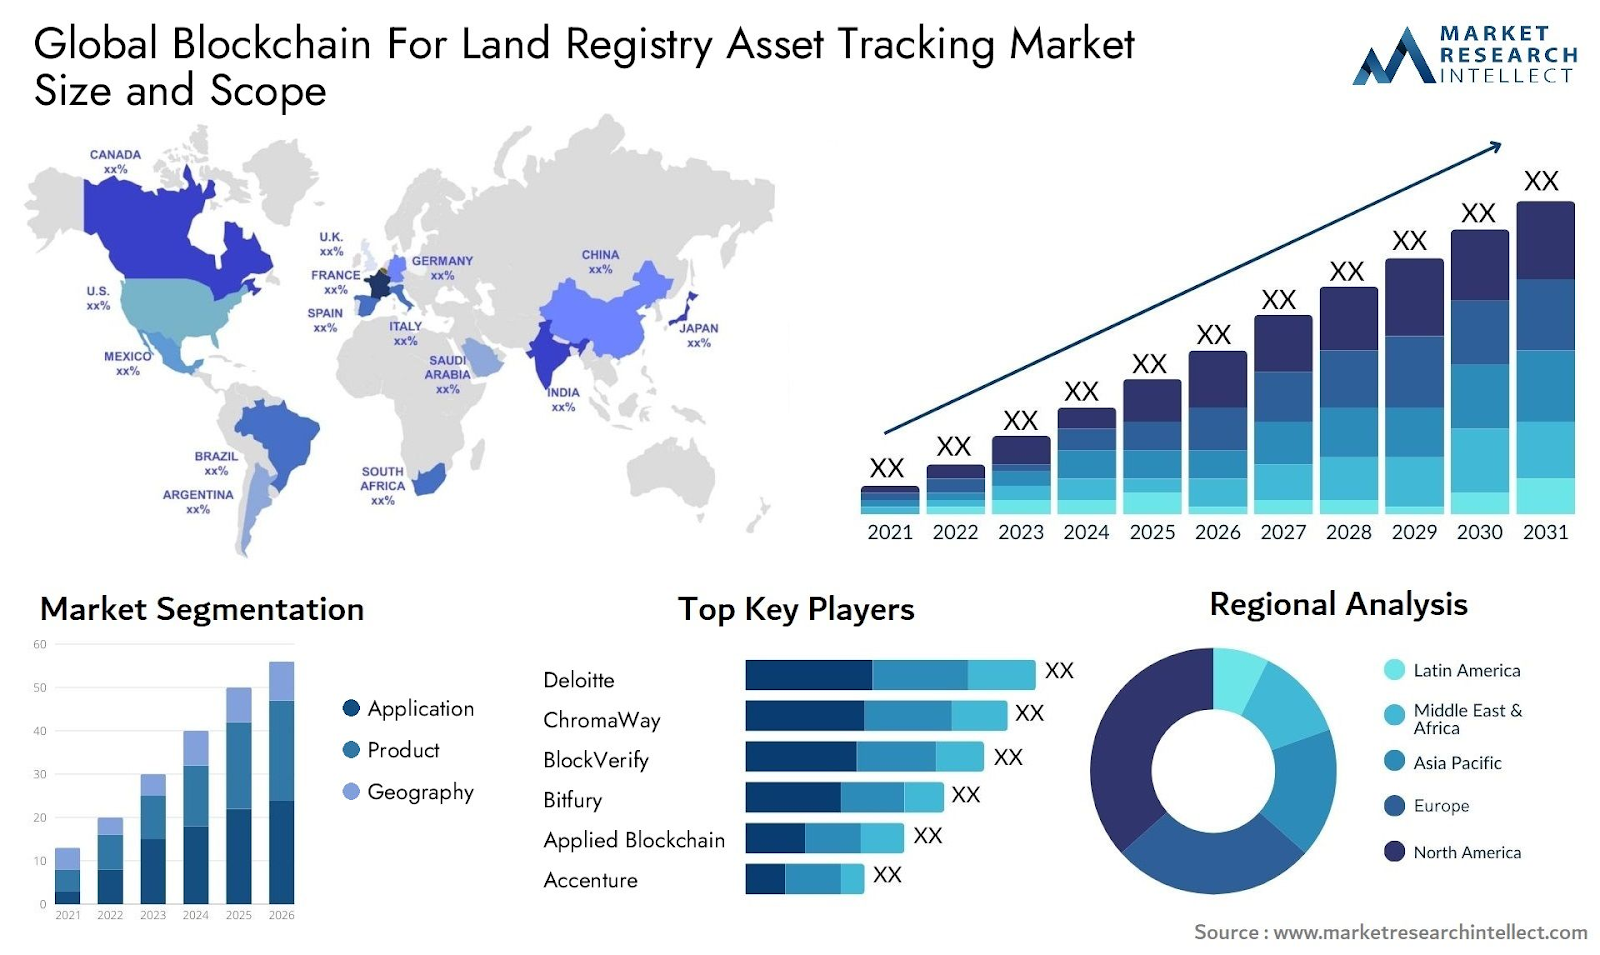 Key Takeaways for Blockchain in Land Registry